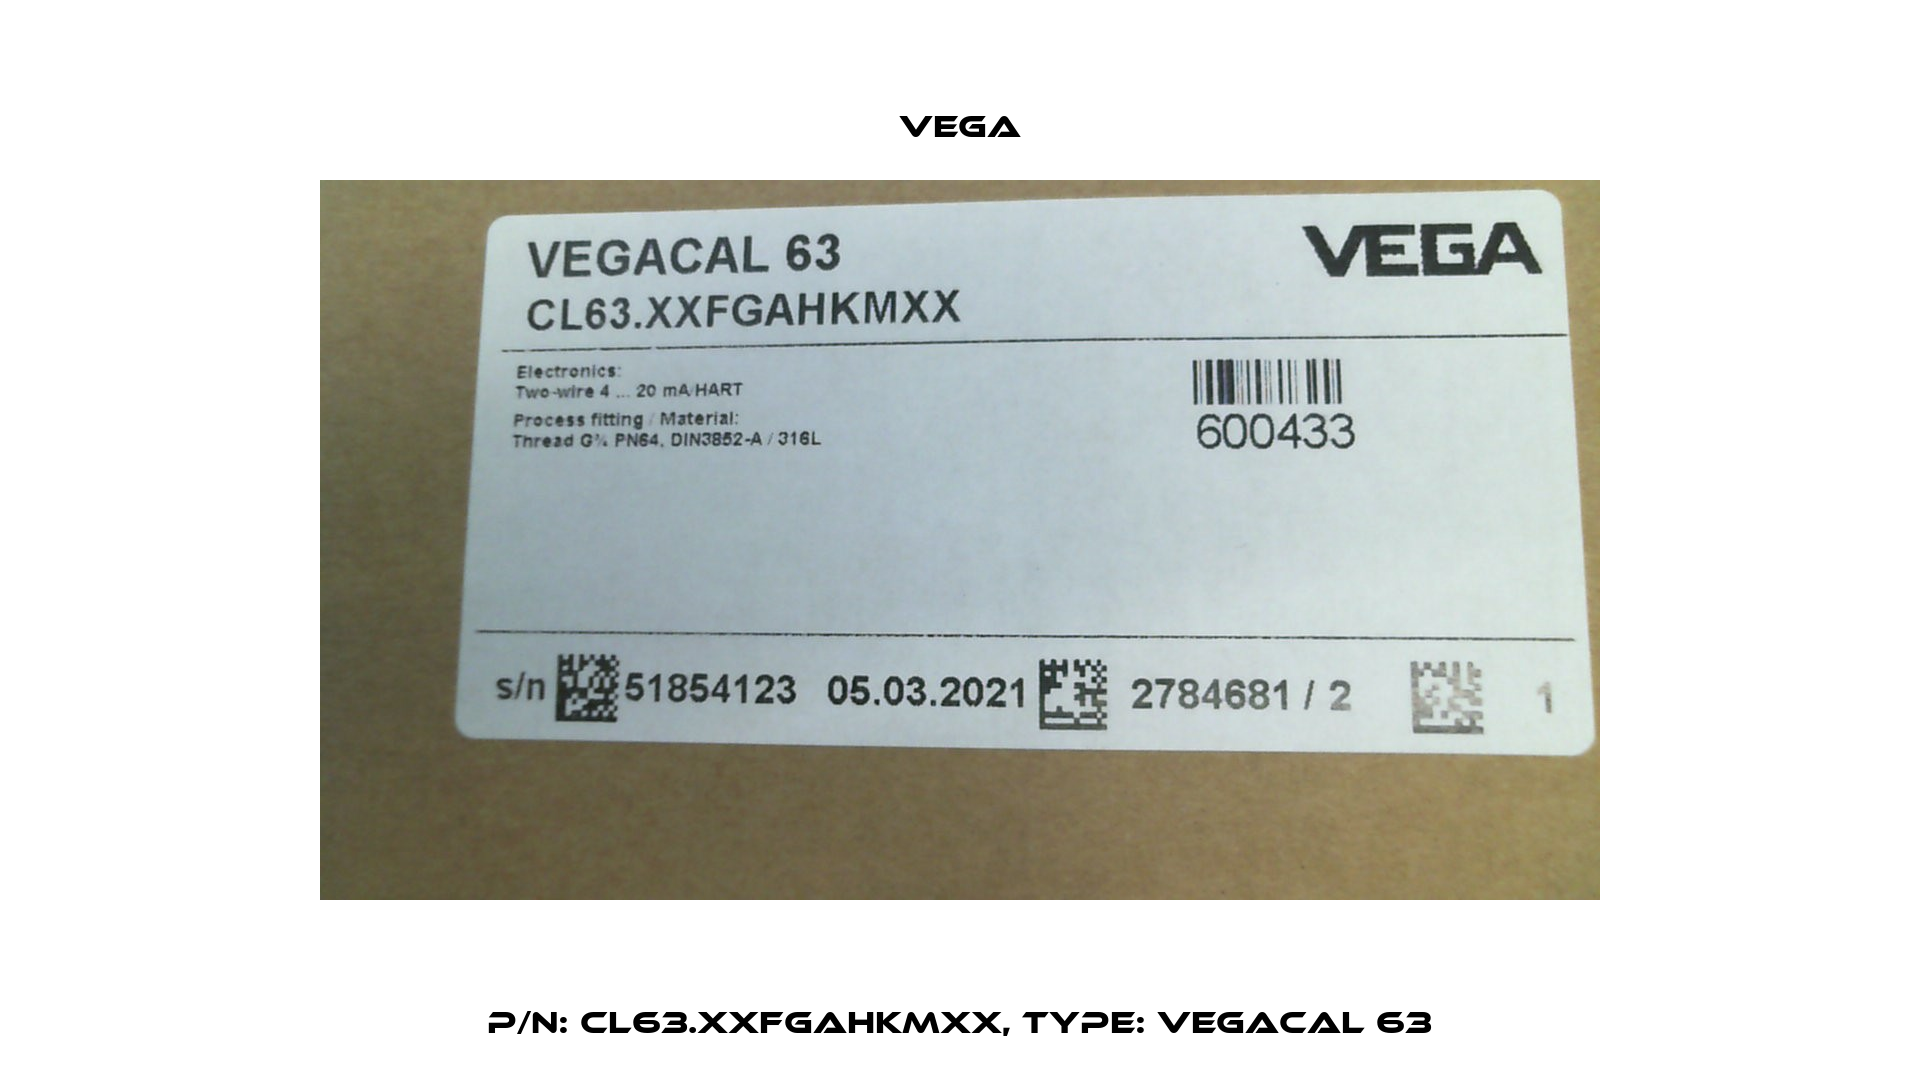 P/N: CL63.XXFGAHKMXX, Type: VEGACAL 63 Vega